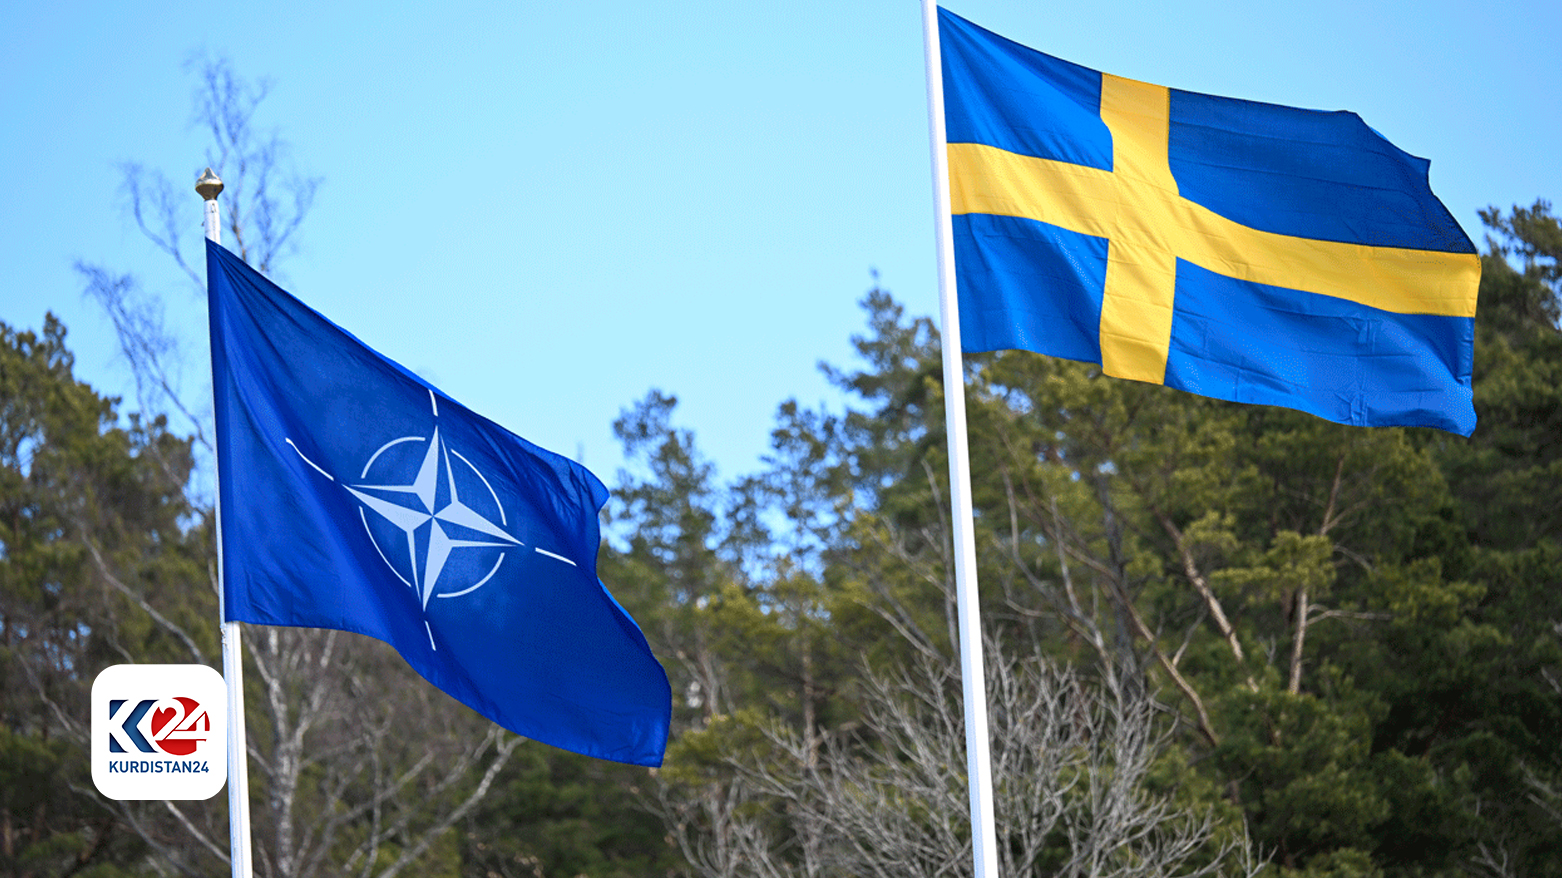 علما السويد وحلف الشمال الأطلسي (الناتو)